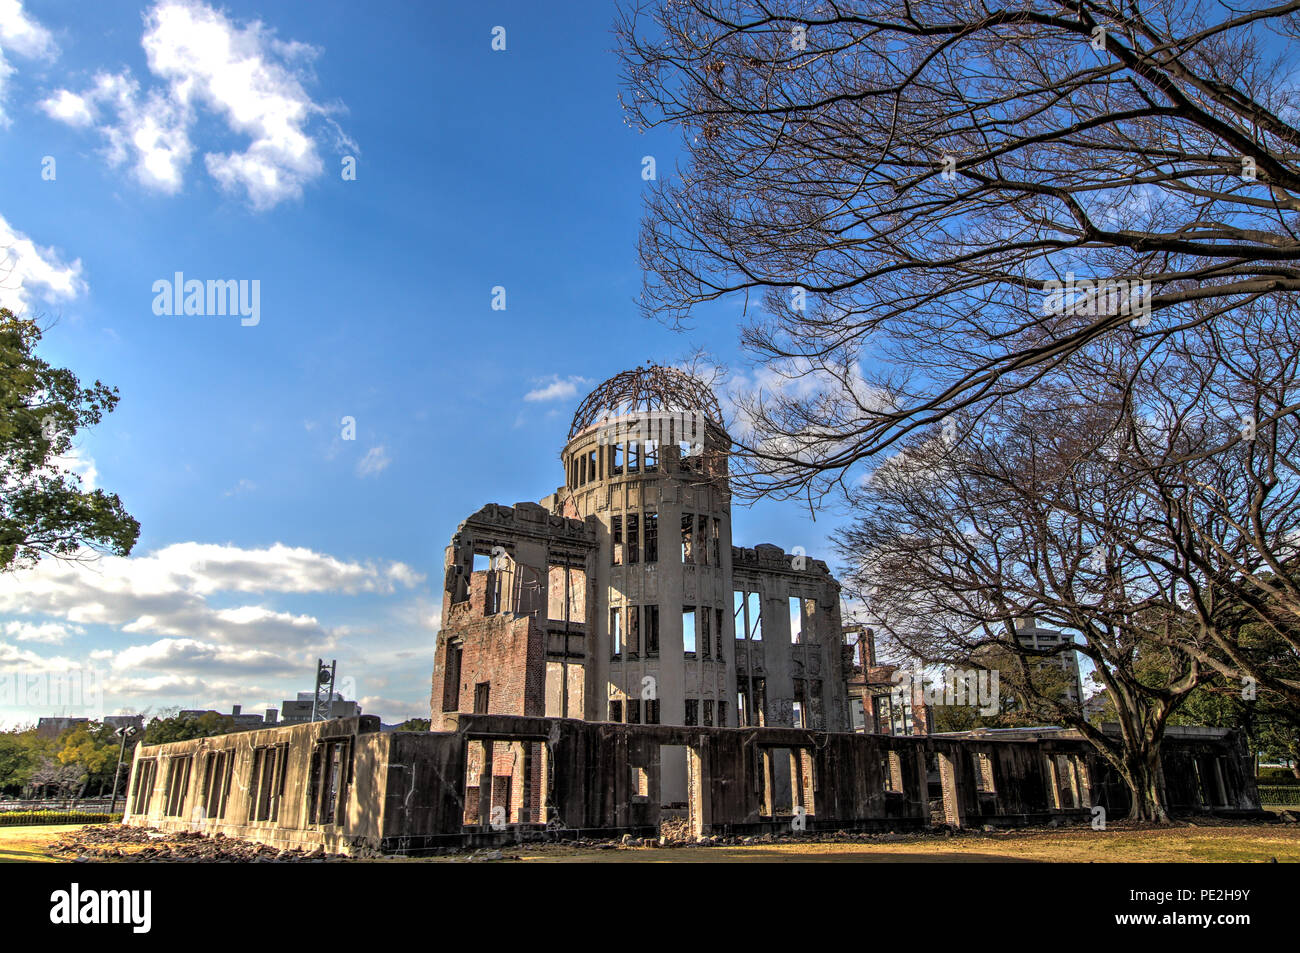 HDR photograph of the Atomic Bomb Dome (Genbaku Dōmu), part of the Hiroshima Peace Memorial in Hiroshima, Japan Stock Photo